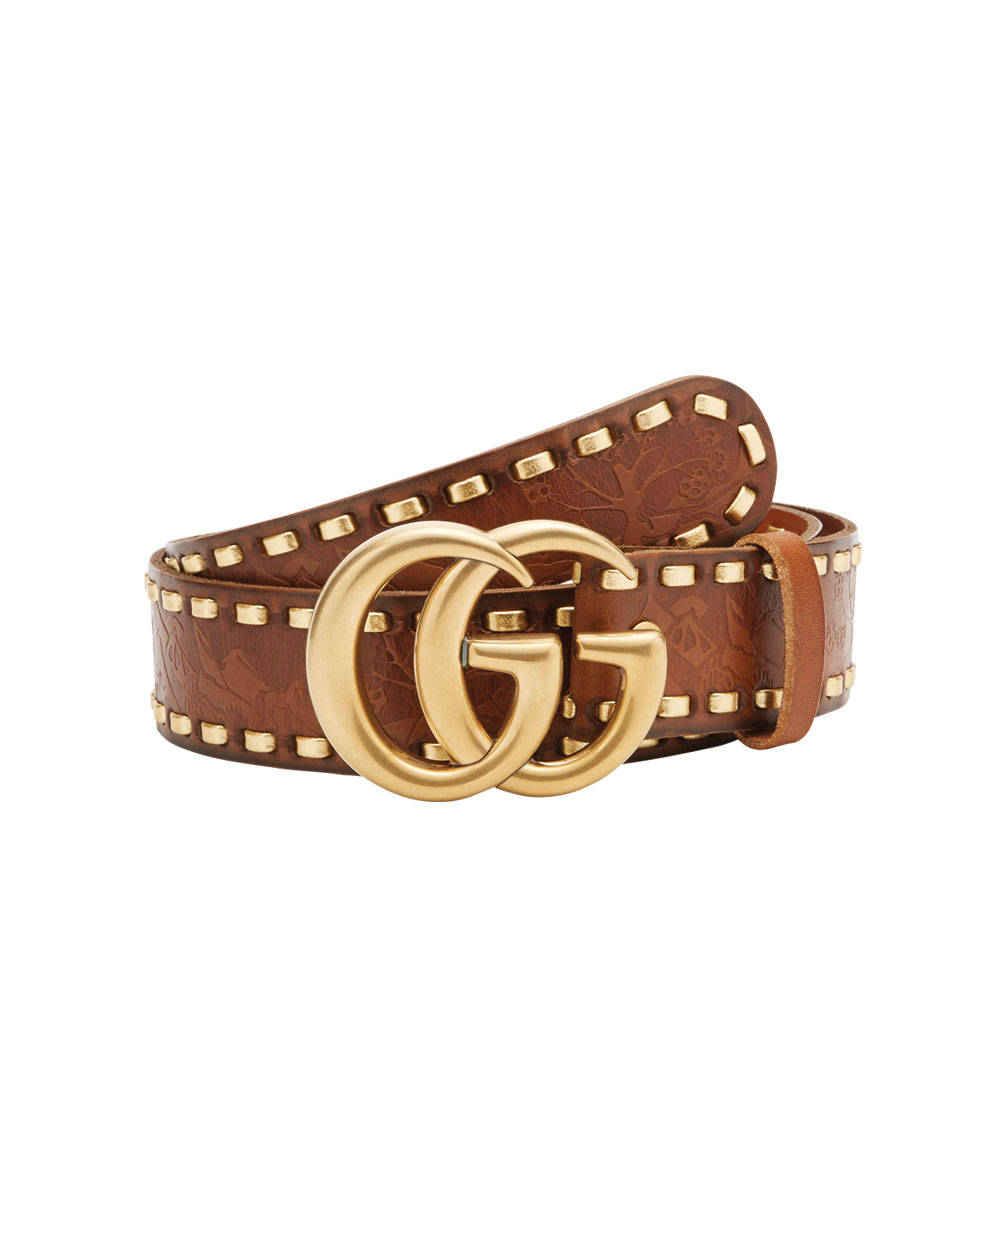 Gucci belt, $1140